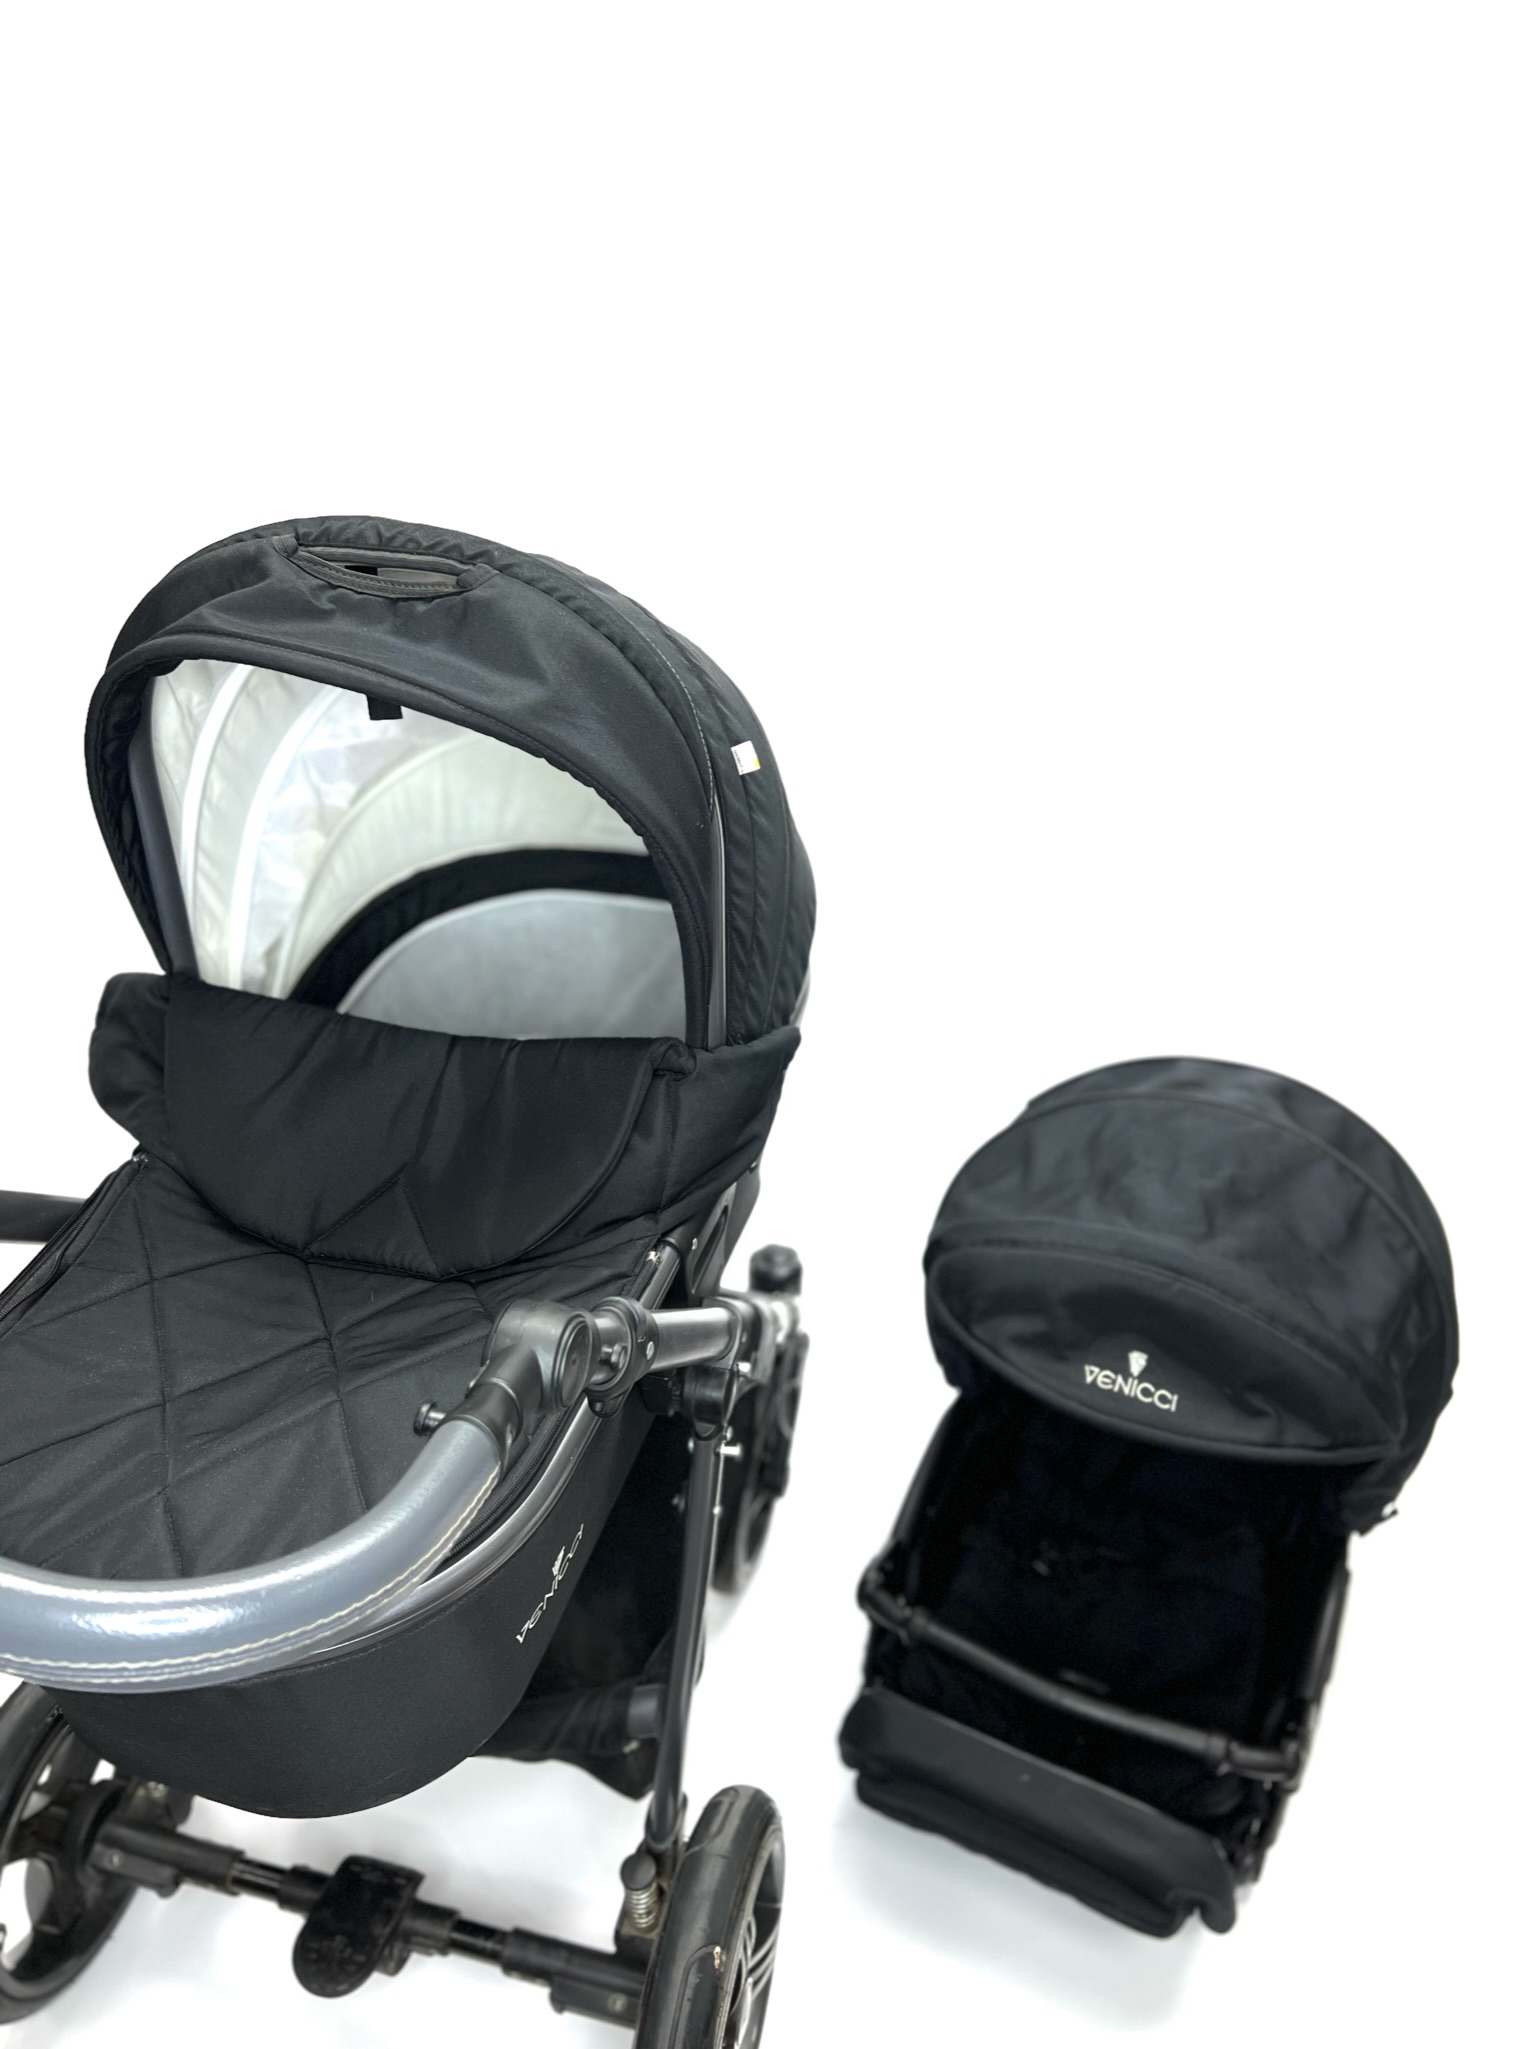 Продажа детской коляски Venicci Carbo, цвет черный, состояние: нормальное. Тест-драйв и доставка по России.